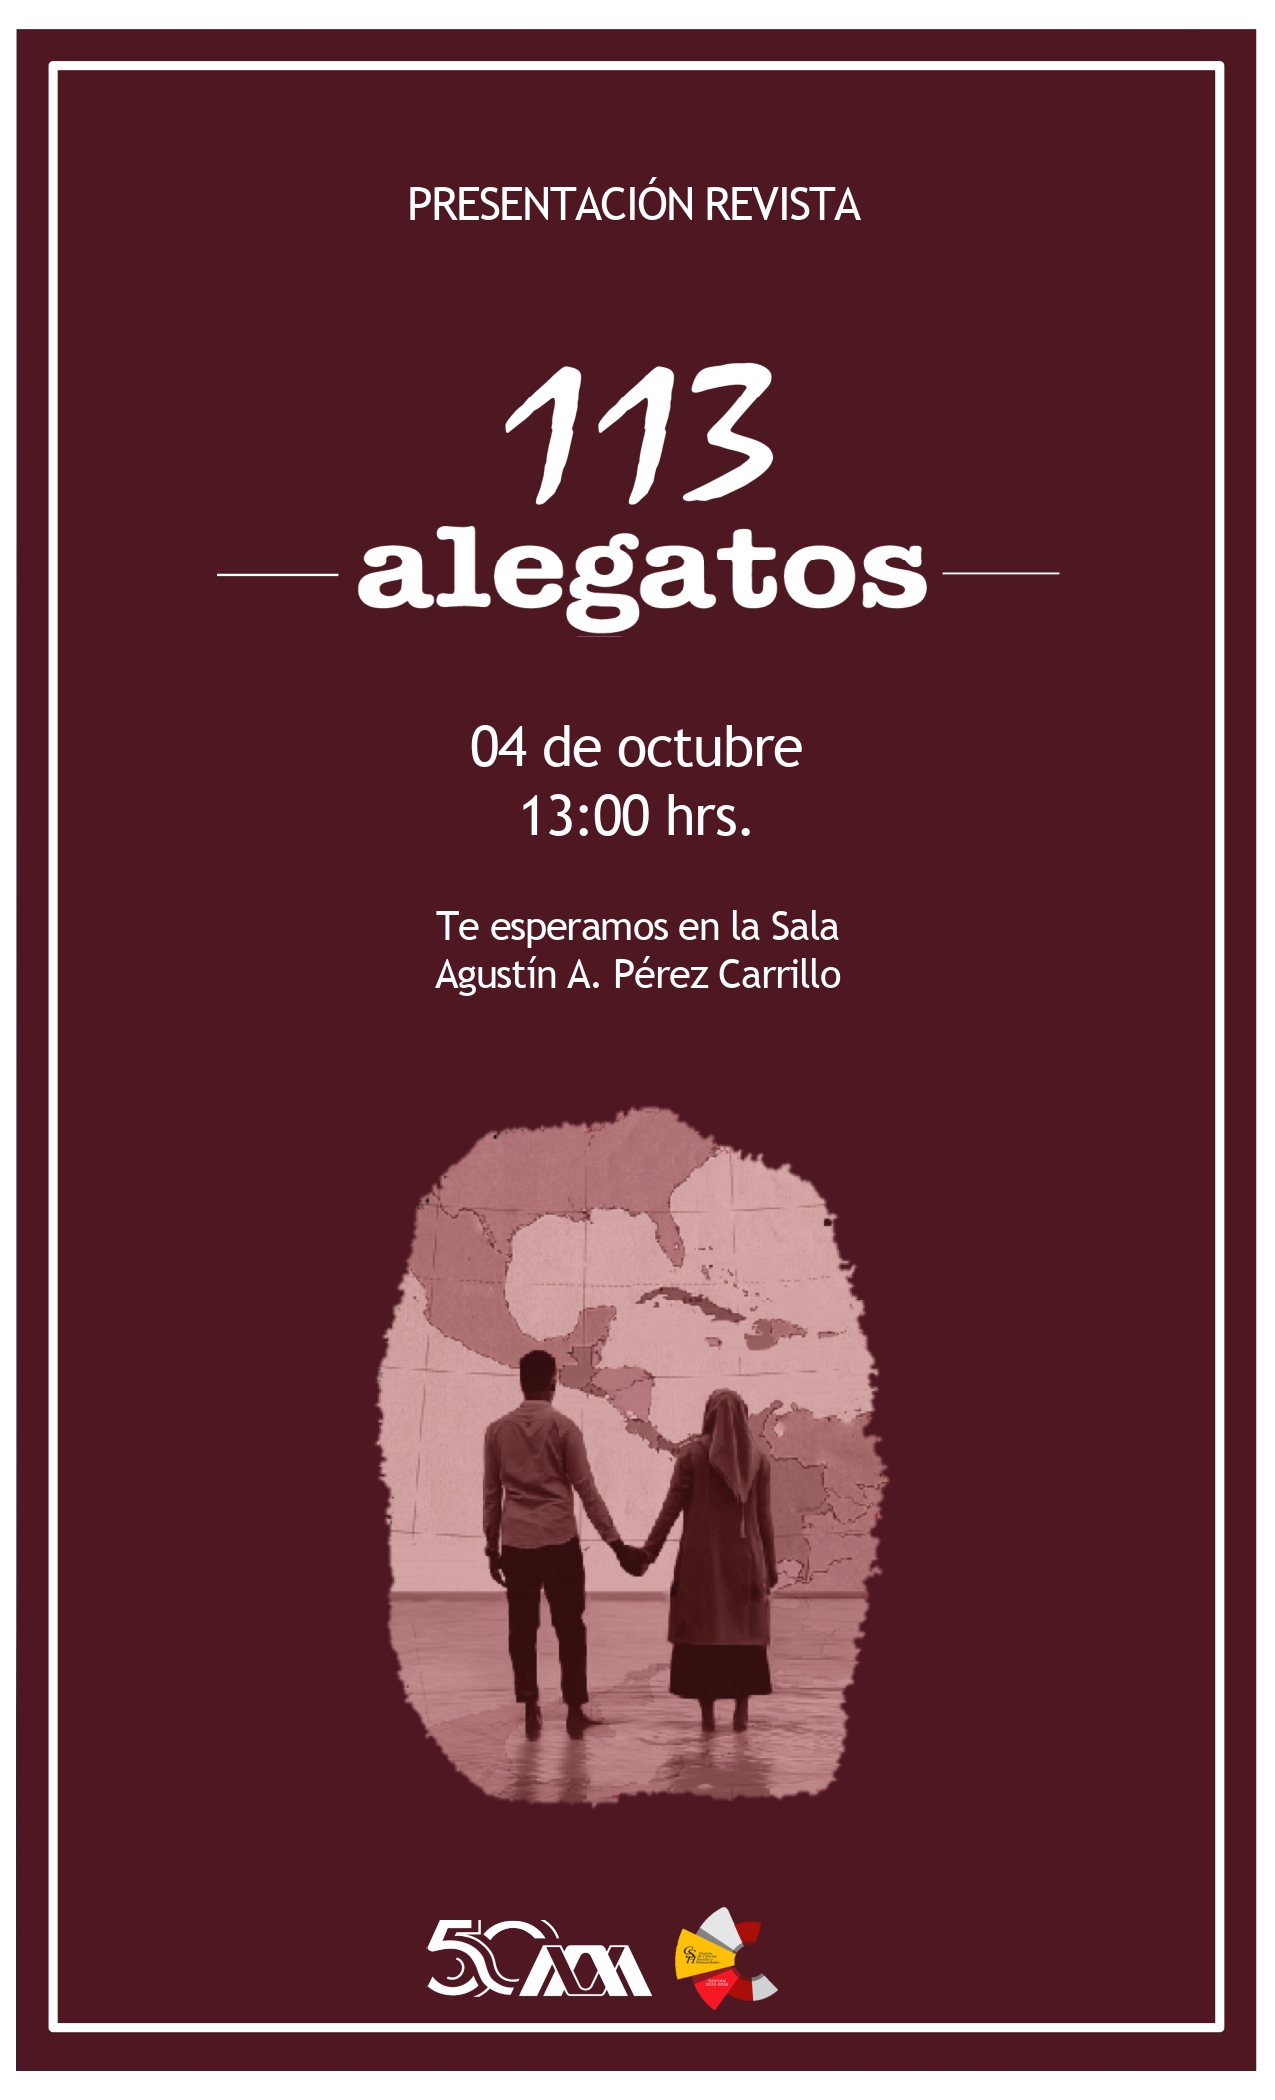 Copia de cartelAlegatos111-112 y 114 page-0001